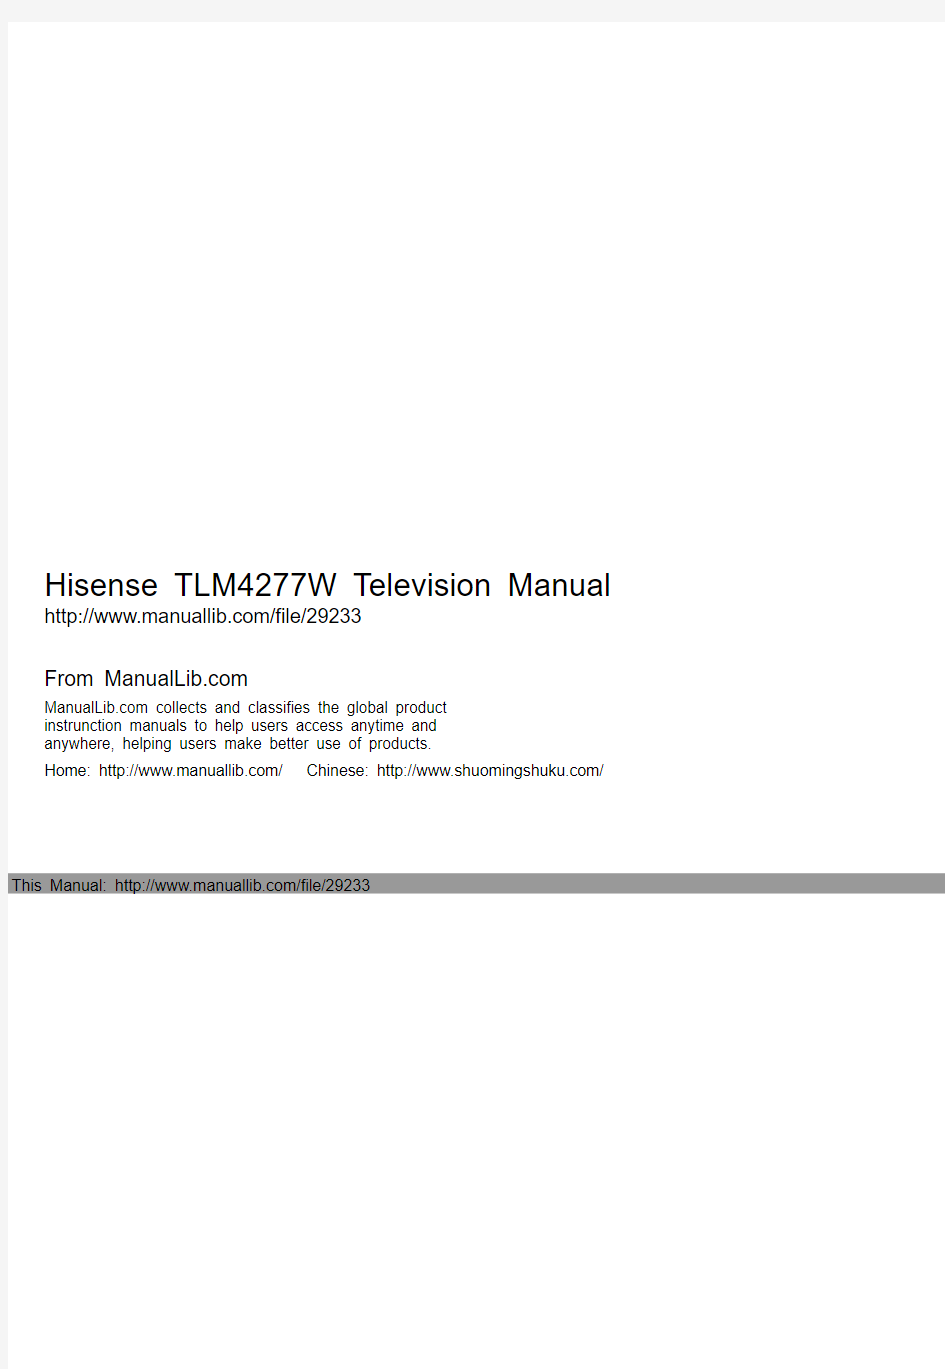 海信 TLM4277W 液晶电视 说明书